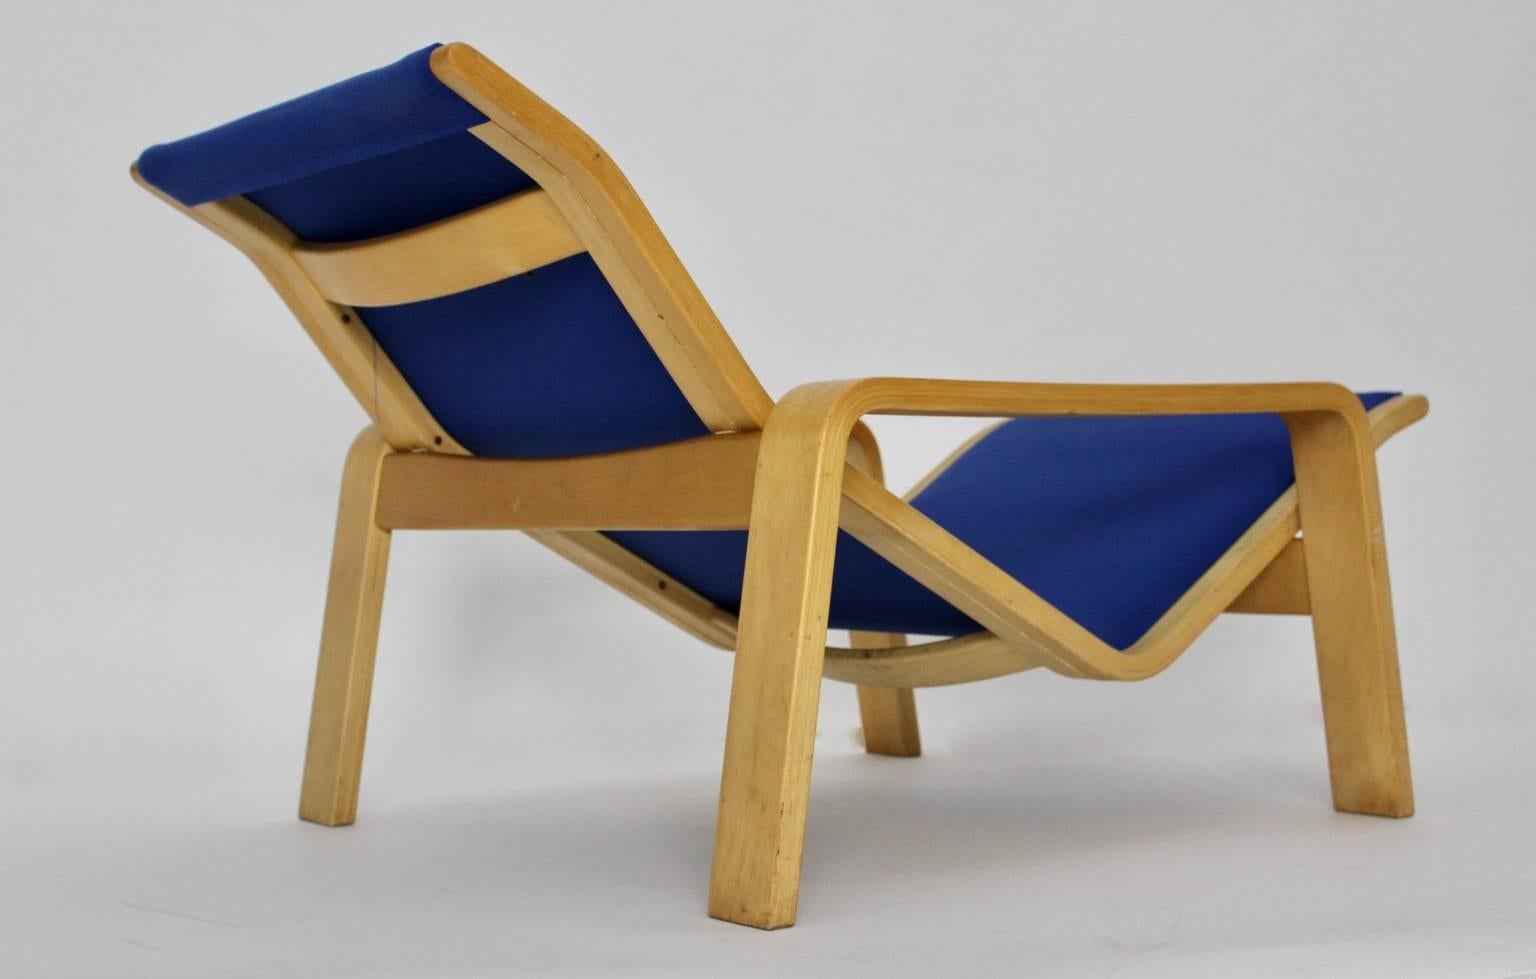 Blauer Scandinavian Modern Vintage Chaise Longue oder Lounge Chair Modell Pulkka aus Birke von Ilmari Lappalainen, 1963, Finnland für Asko Finnland.
Das Gestell der Chaiselongue ist aus naturlackiertem Birkensperrholz, während die abnehmbare